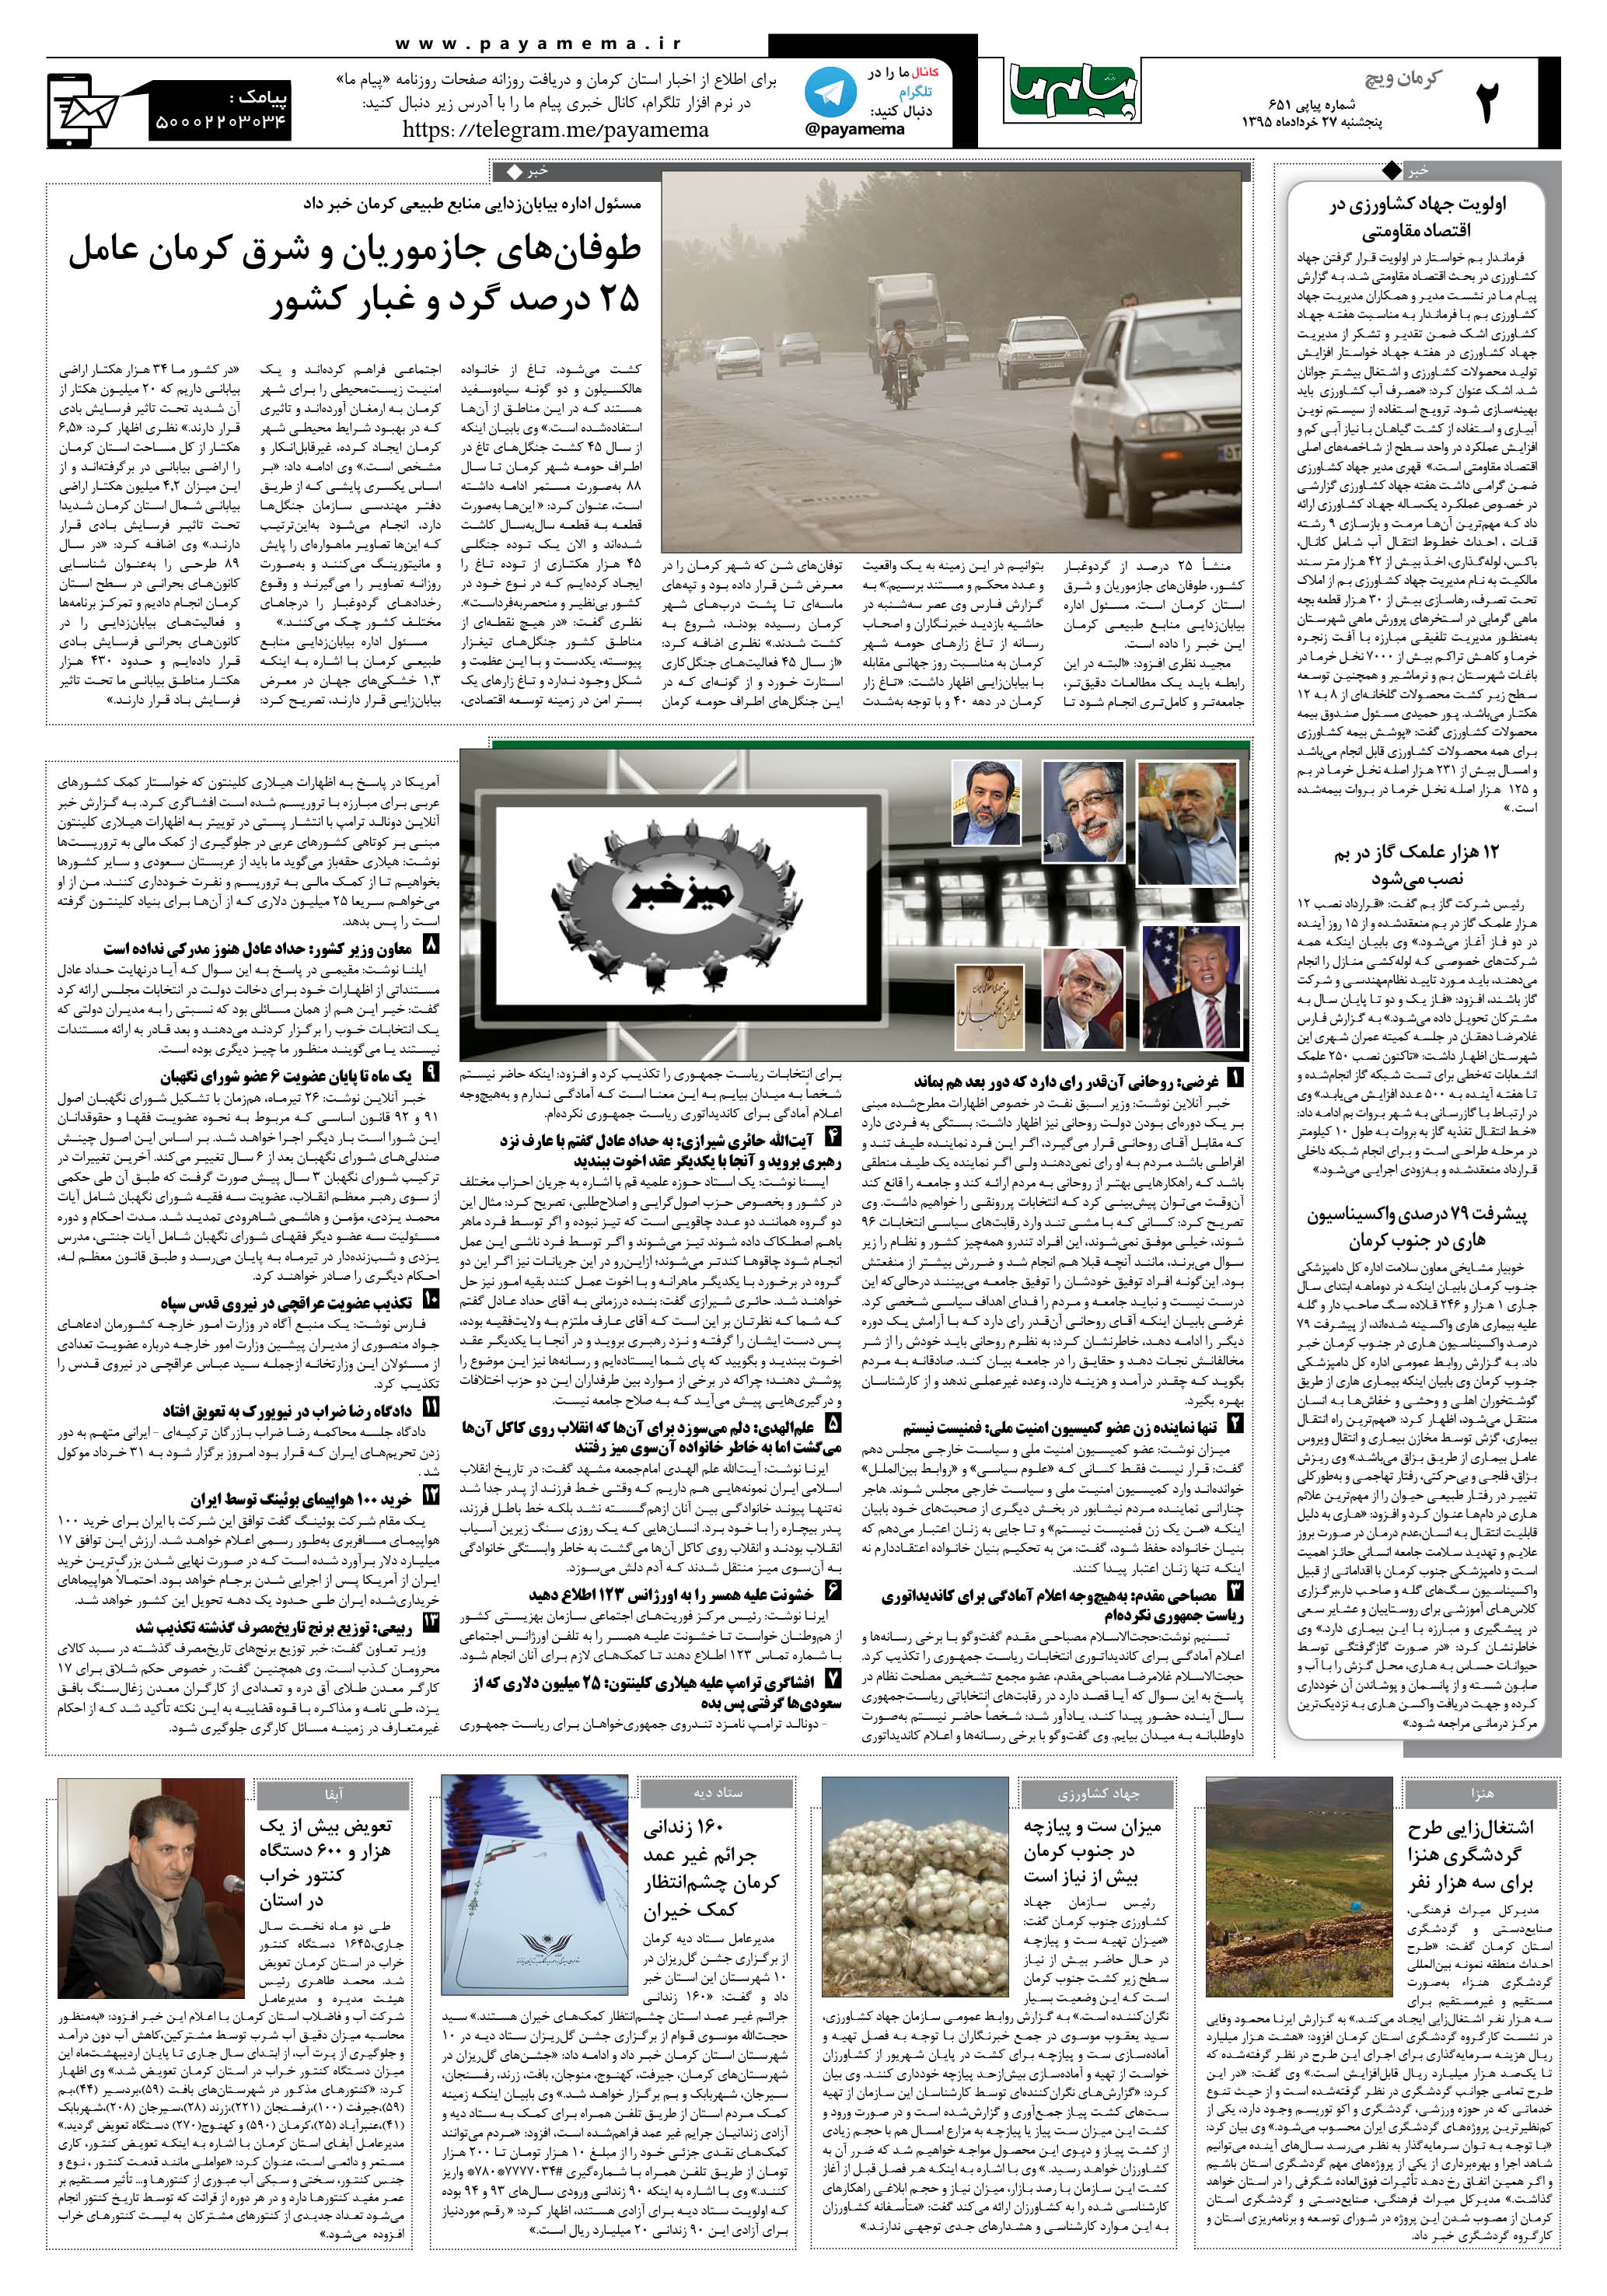 صفحه کرمان ویج شماره 651 روزنامه پیام ما